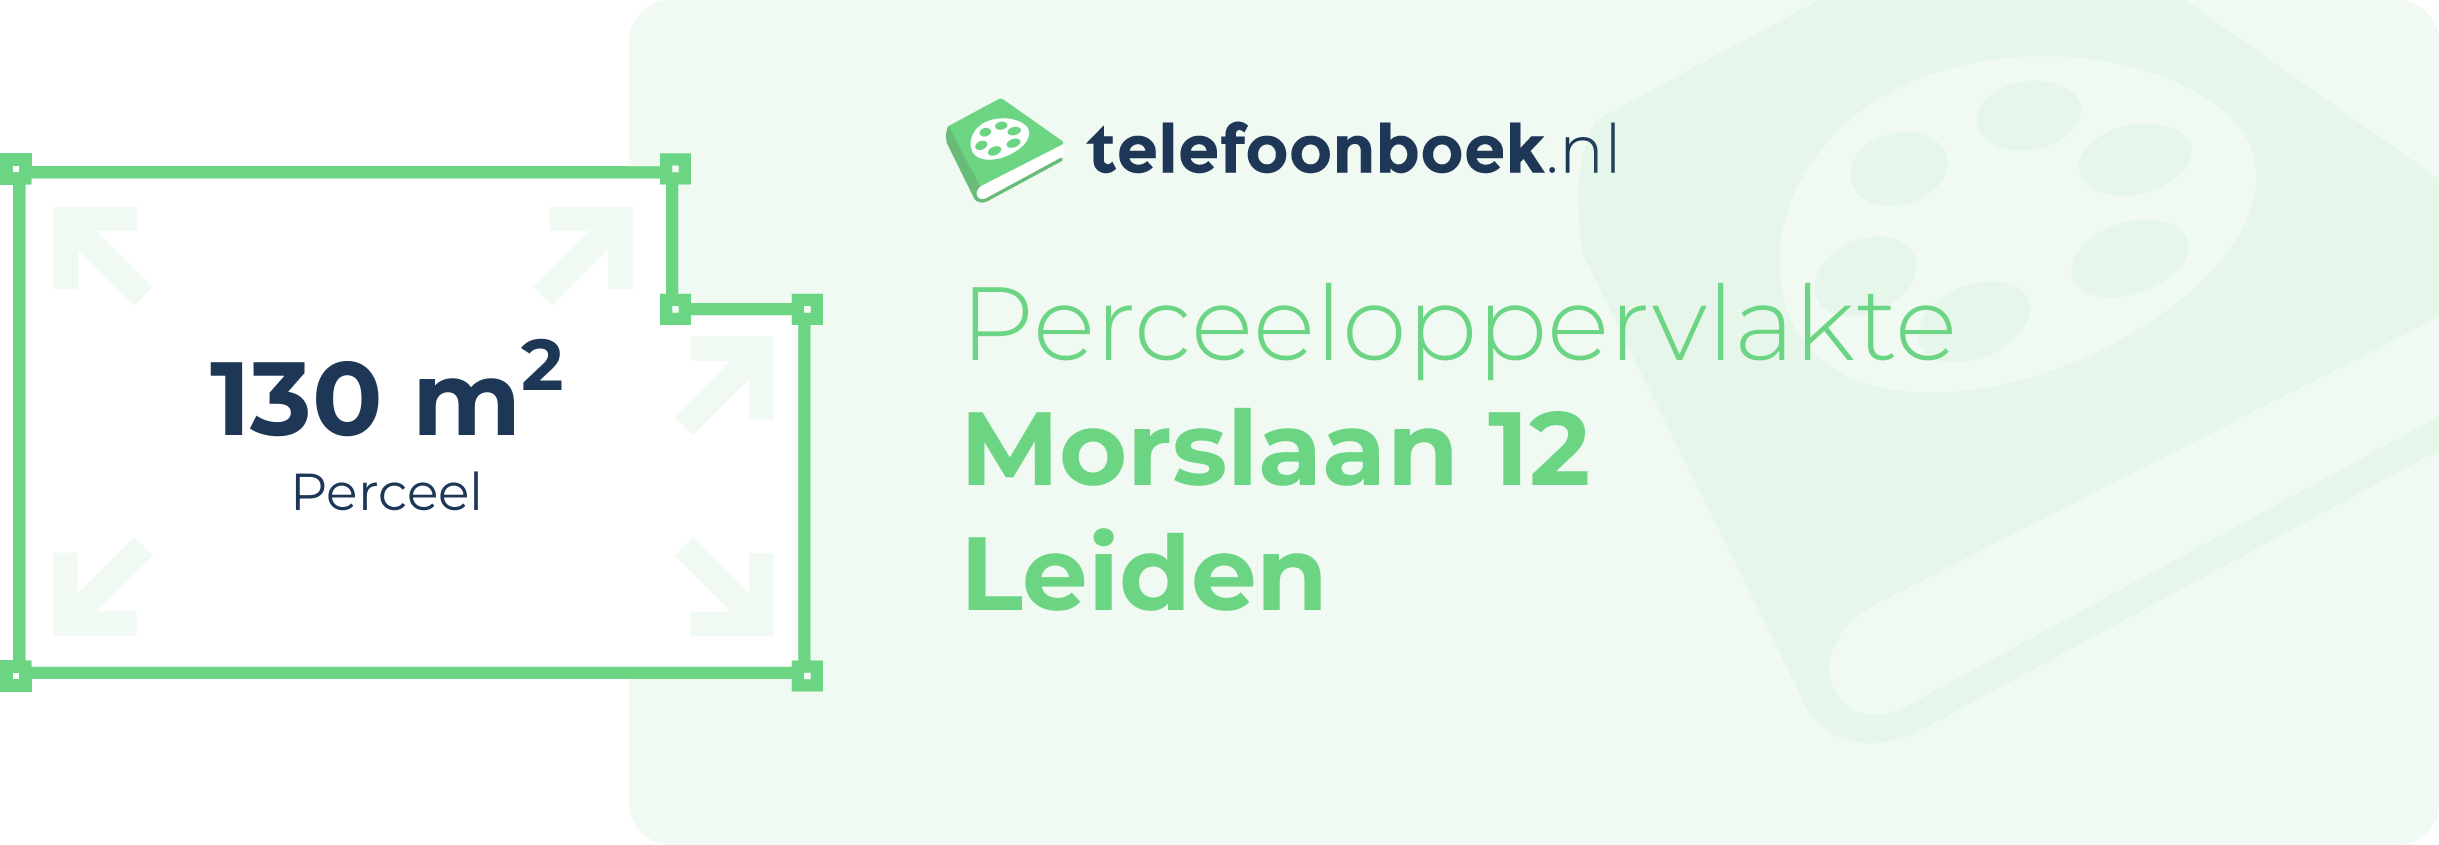 Perceeloppervlakte Morslaan 12 Leiden